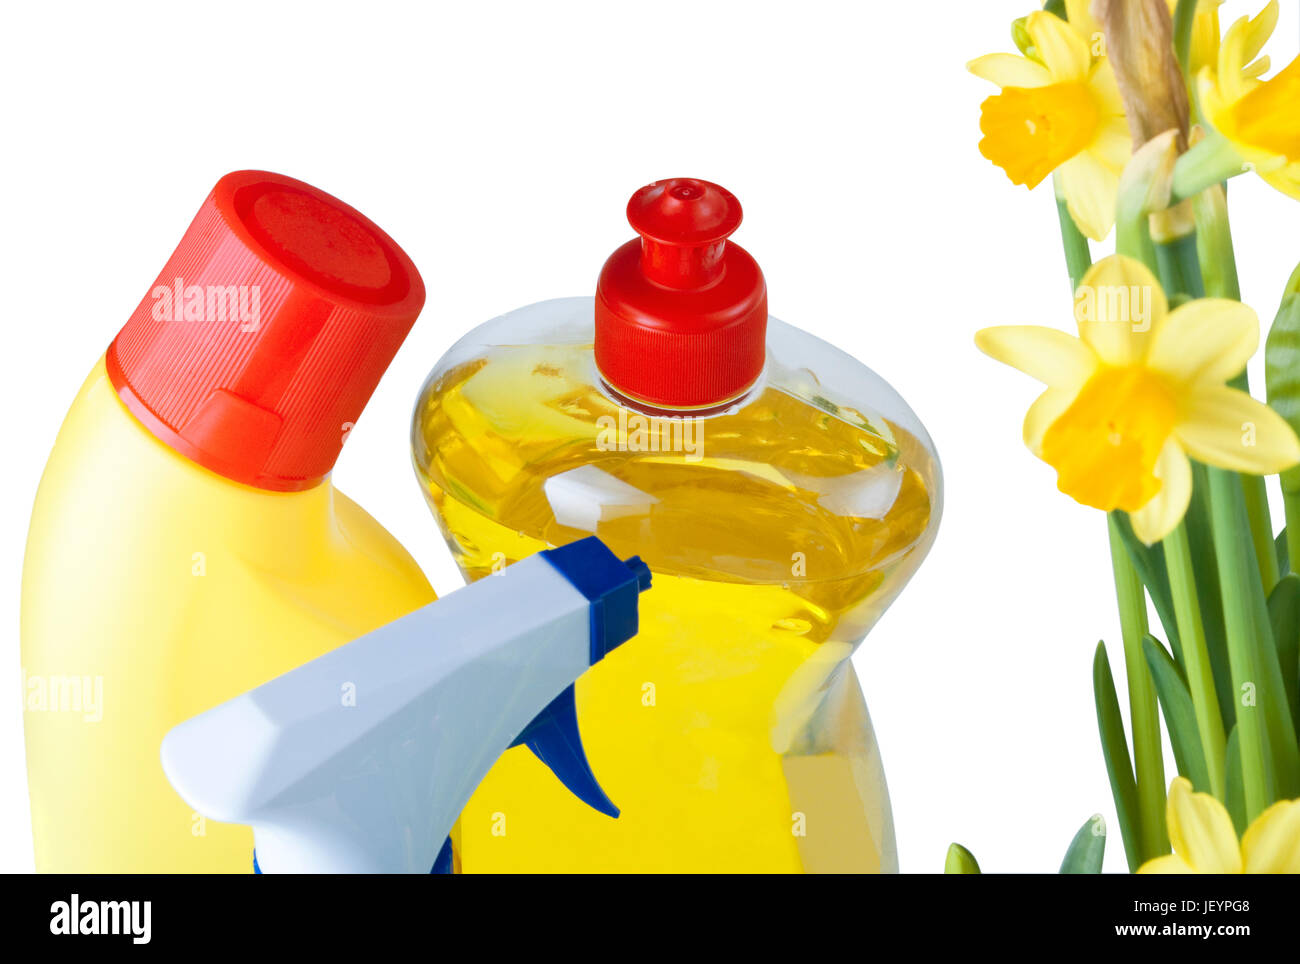 Un gruppo di prodotti per la pulizia accanto ad alcuni narcisi a significare le pulizie di primavera. Isolati contro uno sfondo bianco. Foto Stock